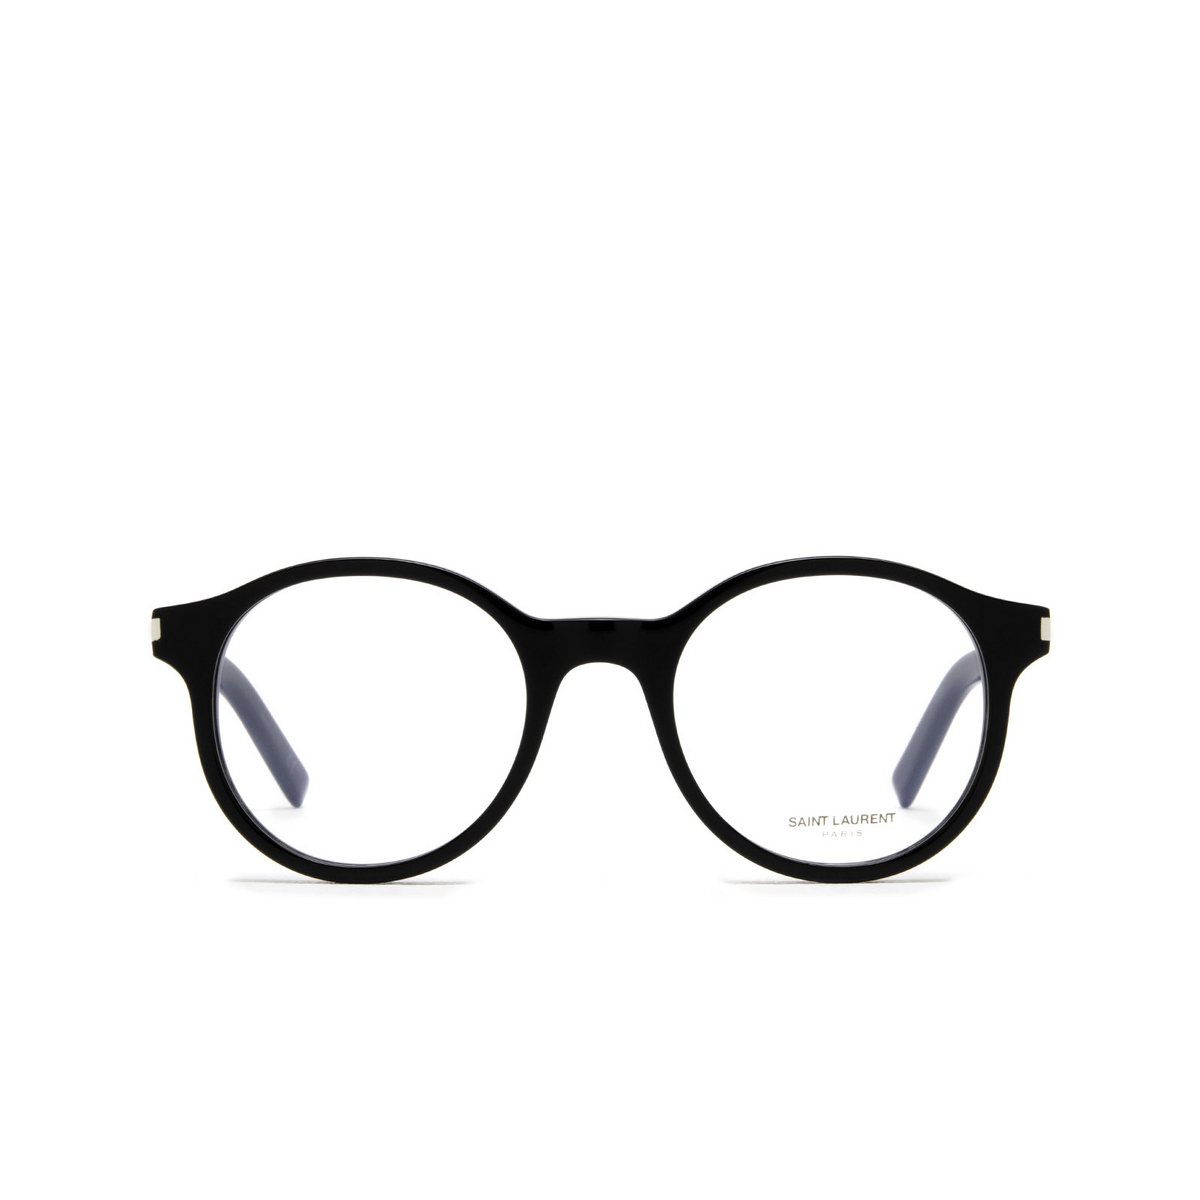 Saint Laurent® Round Eyeglasses: SL 521 OPT color 001 Black - front view